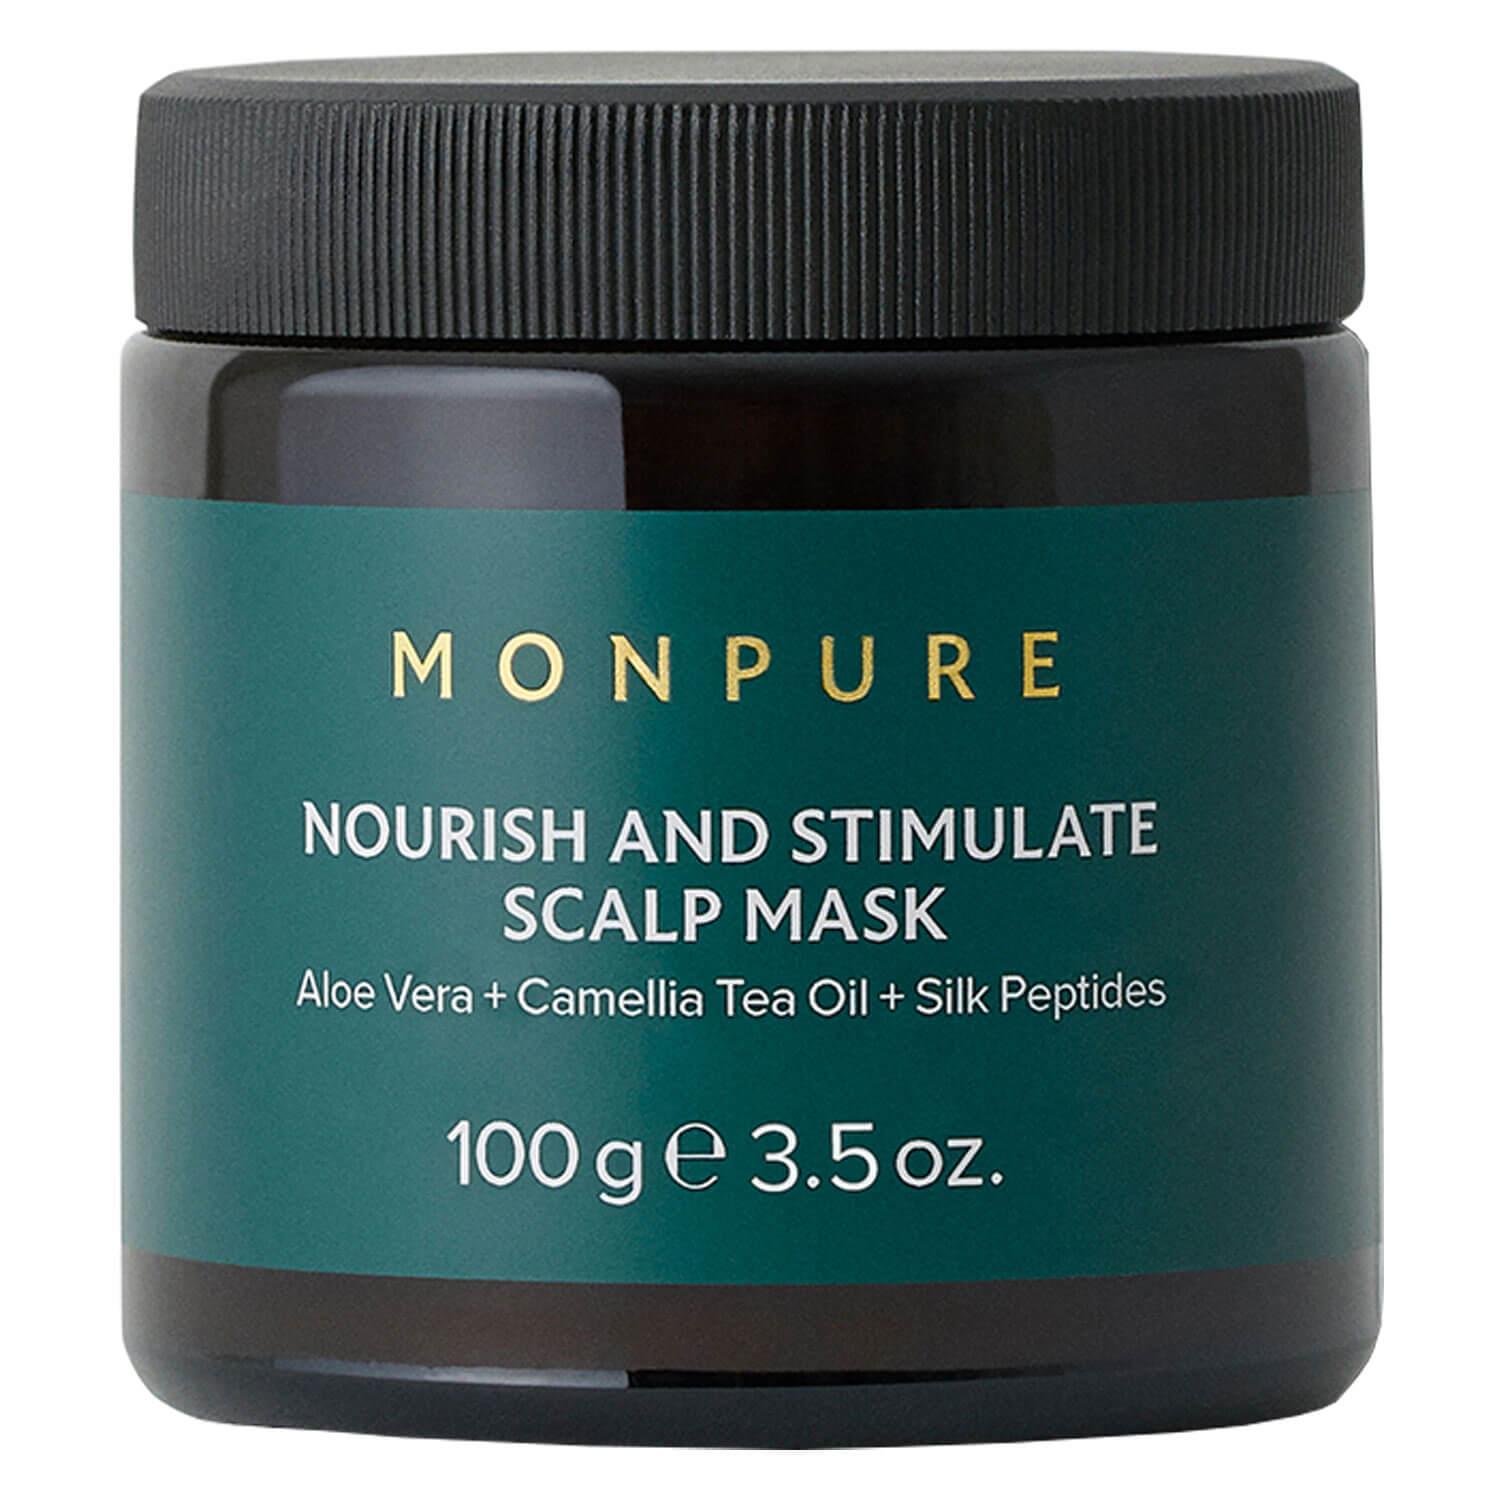 MONPURE - Nourish and Stimulate Scalp Mask